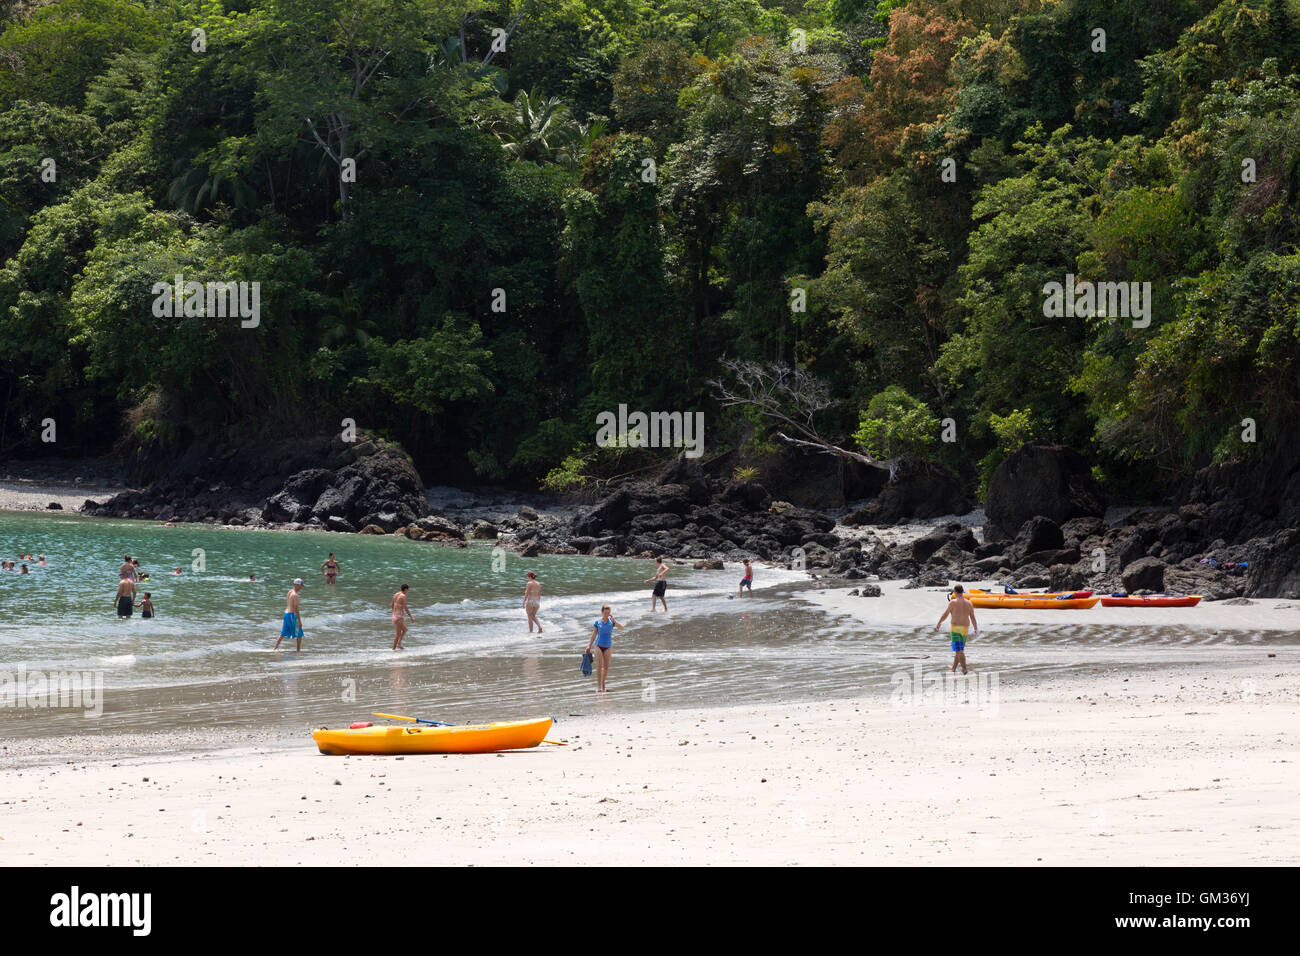 Manuel Antonio National Park ; les touristes sur la plage, profiter des sports nautiques, activités de plein air Biesanz Playa, Parc National Manuel Antonio, Costa Rica Banque D'Images